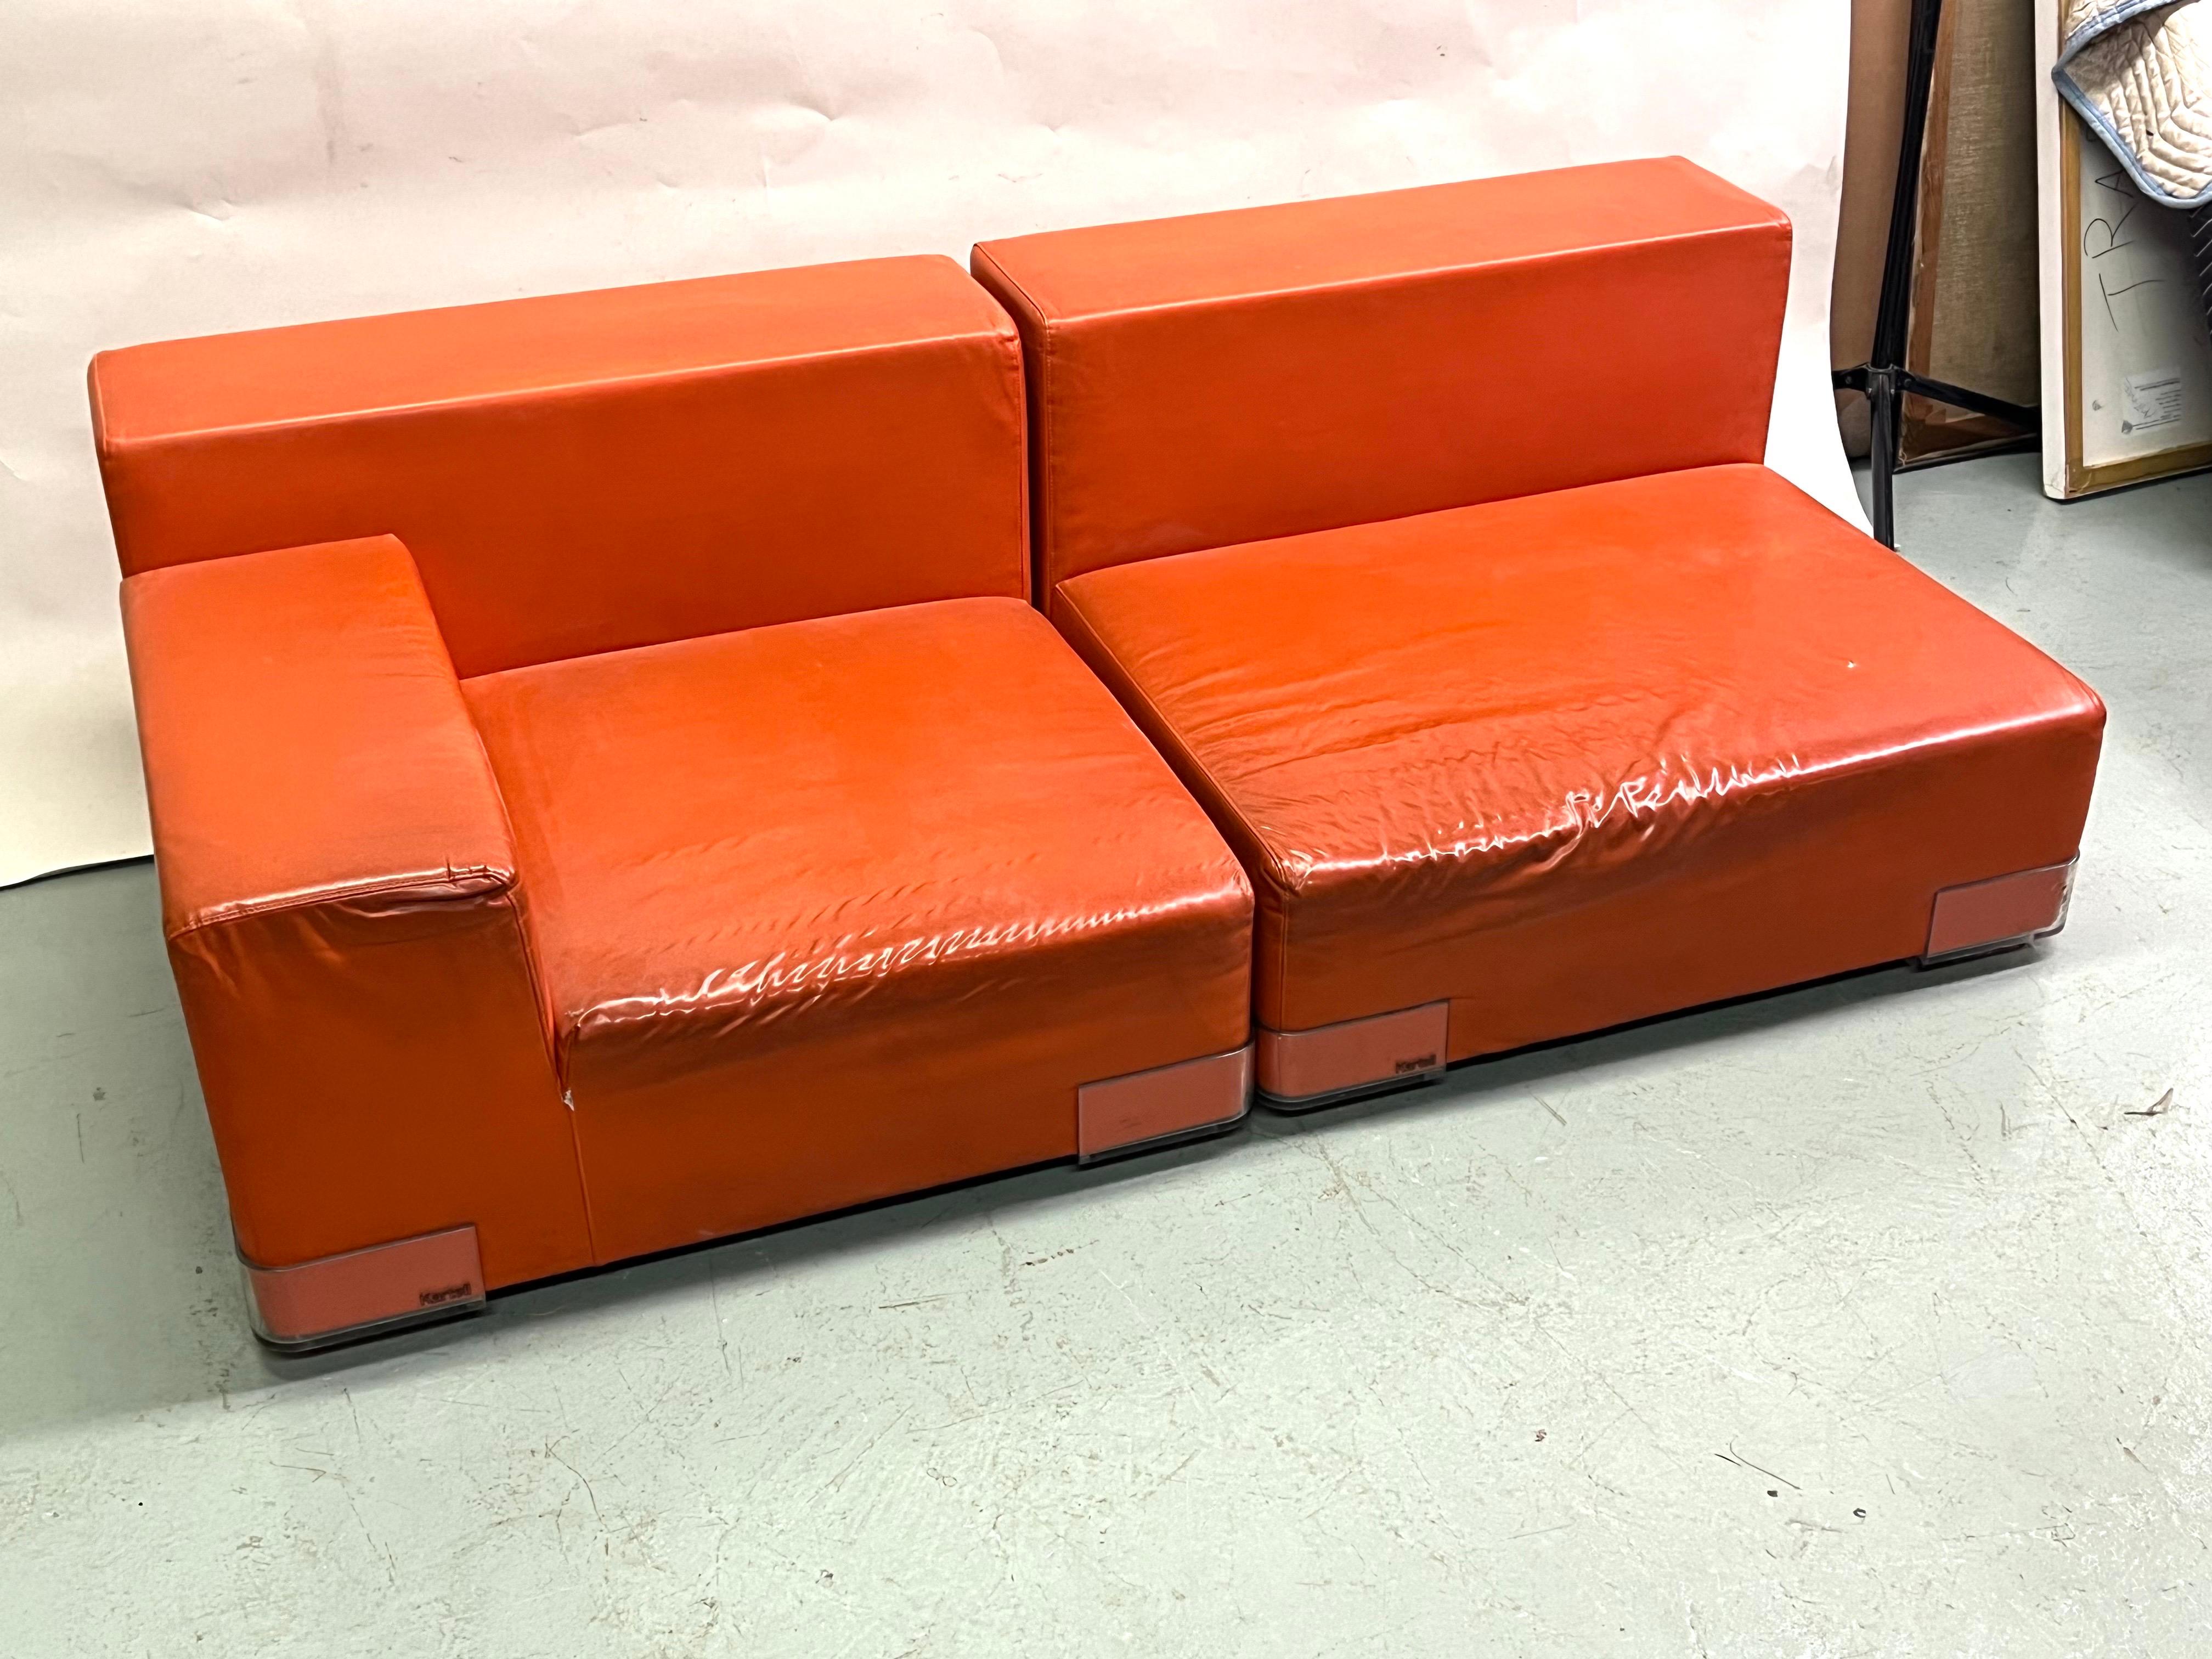 Ein ikonisches italienisches Sofa/Sofa/Paar Loungesessel aus der Mitte des Jahrhunderts von Piero Lissoni in einer schlanken, modernen, niedrigen, quadratischen Form um 1970-1975. Das Sofa ist modular aufgebaut, multifunktional und kann ein